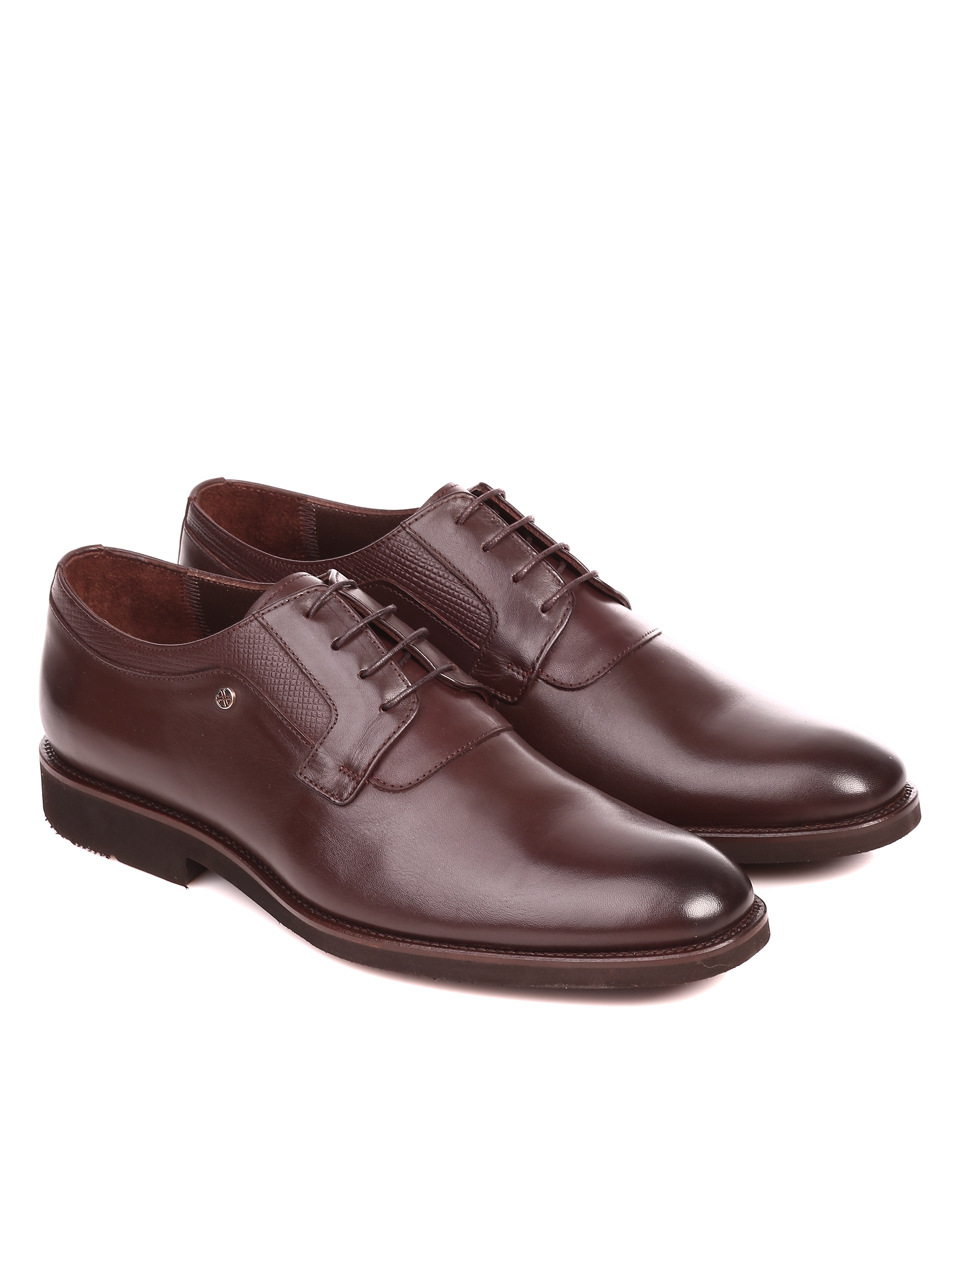 Елегантни мъжки обувки от естествена кожа 7AT-21855 brown